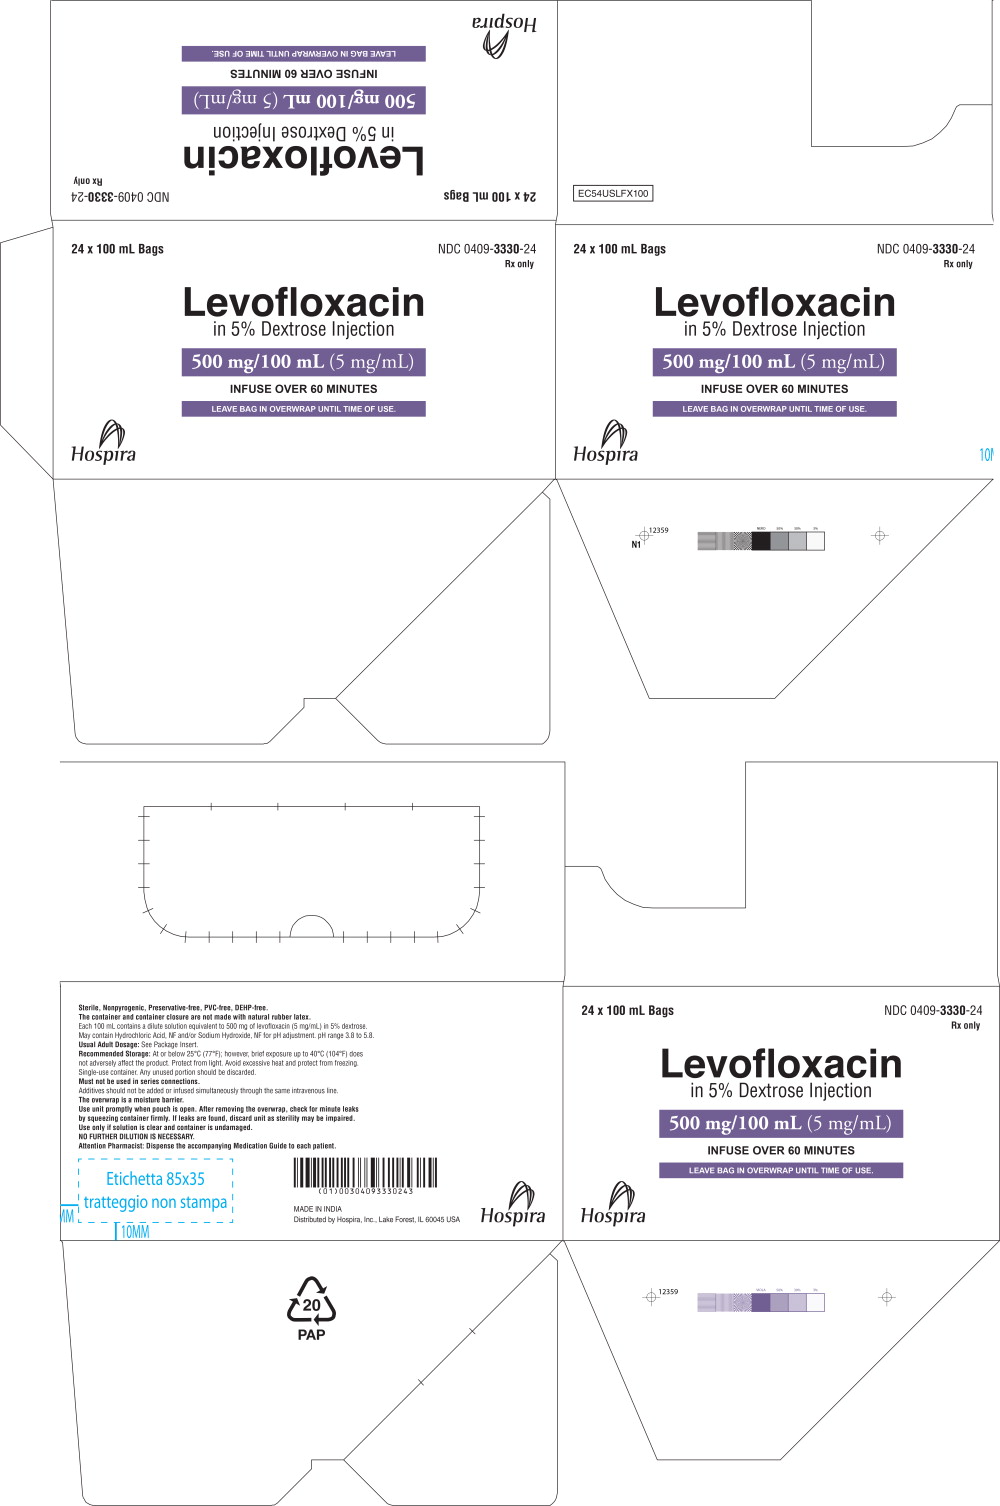 Principal Display Panel – 500 mg/100 mL Carton Label
